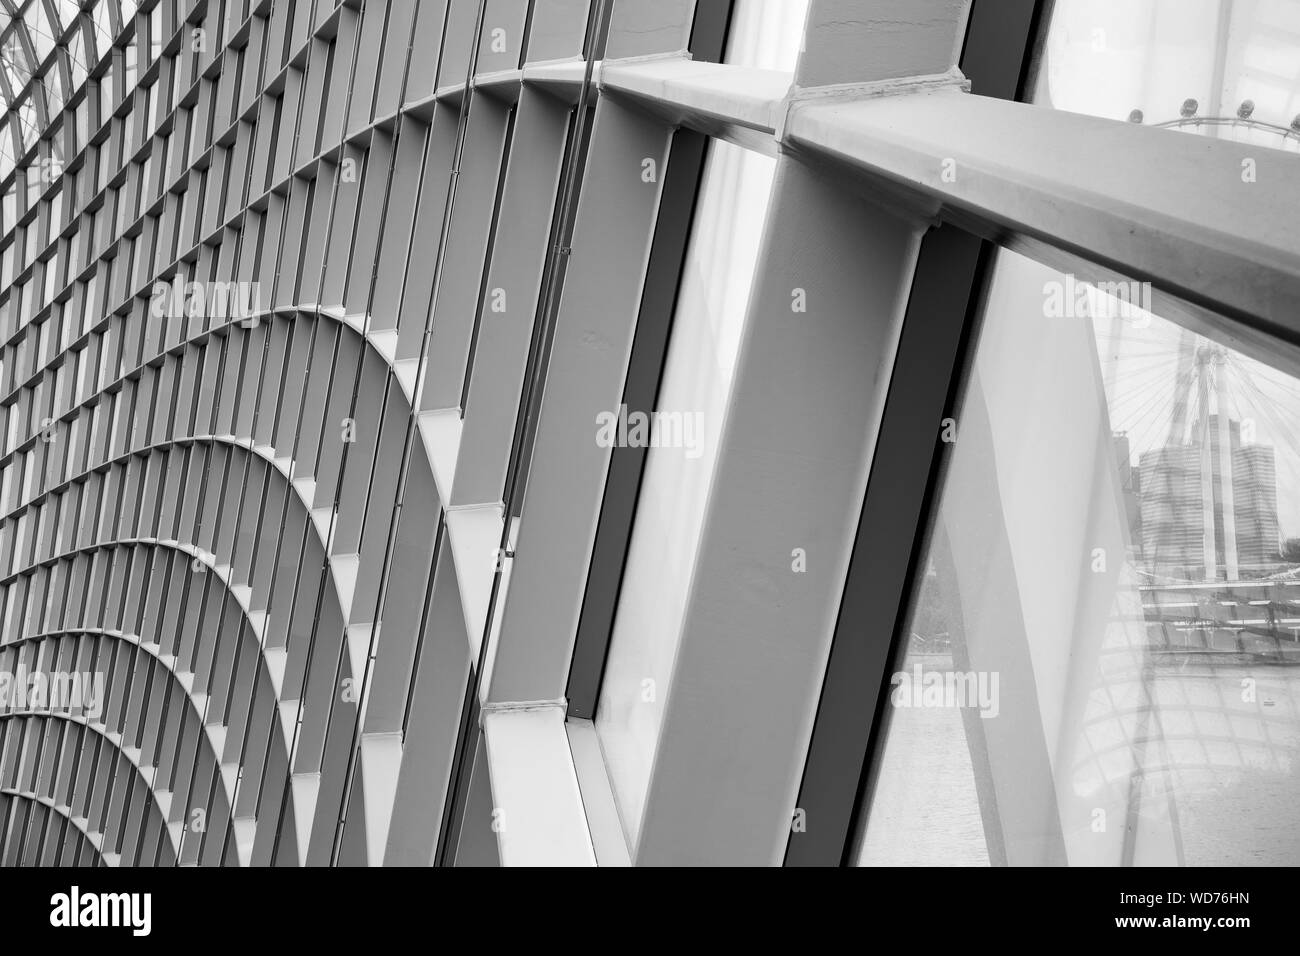 Abstract quadrato geometrico modello di facciata per tetti, Architettura moderna del composito di alluminio struttura di rivestimento. Architettonico d'arte facciate Struct Foto Stock